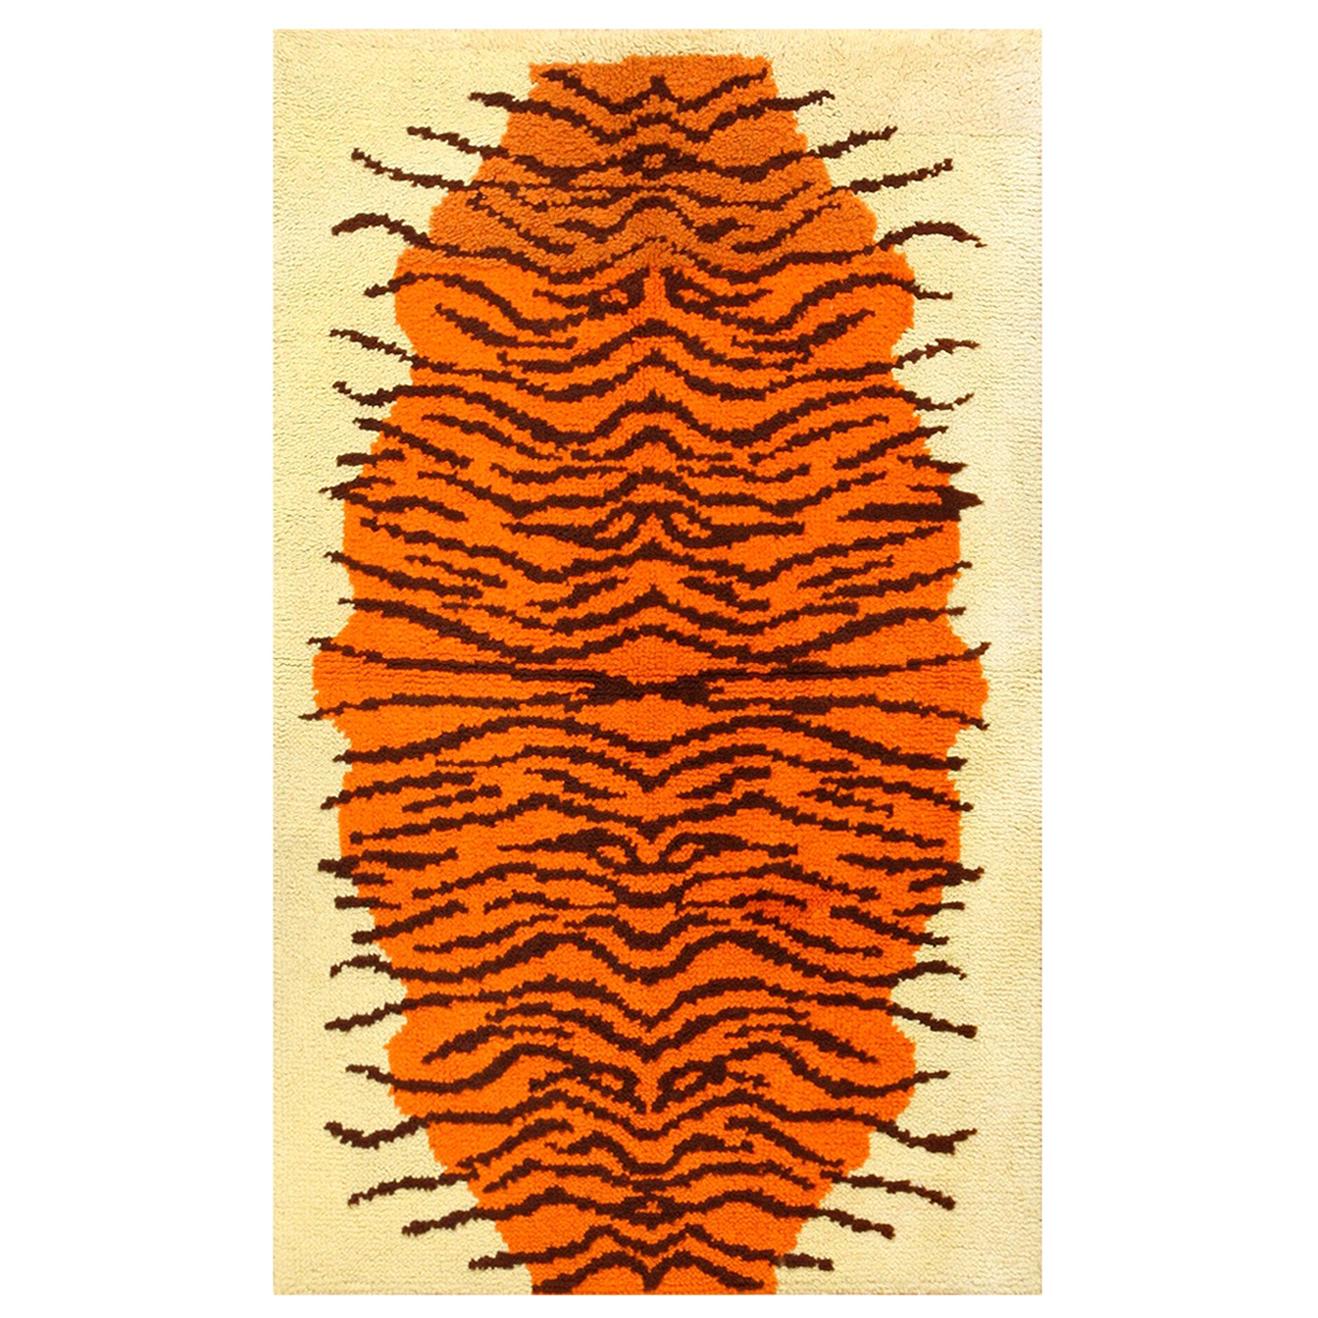 Schwedischer Rya-Teppich im Vintage-Tierpelz-Design. 3 ft 2 in x 4 ft 10 in